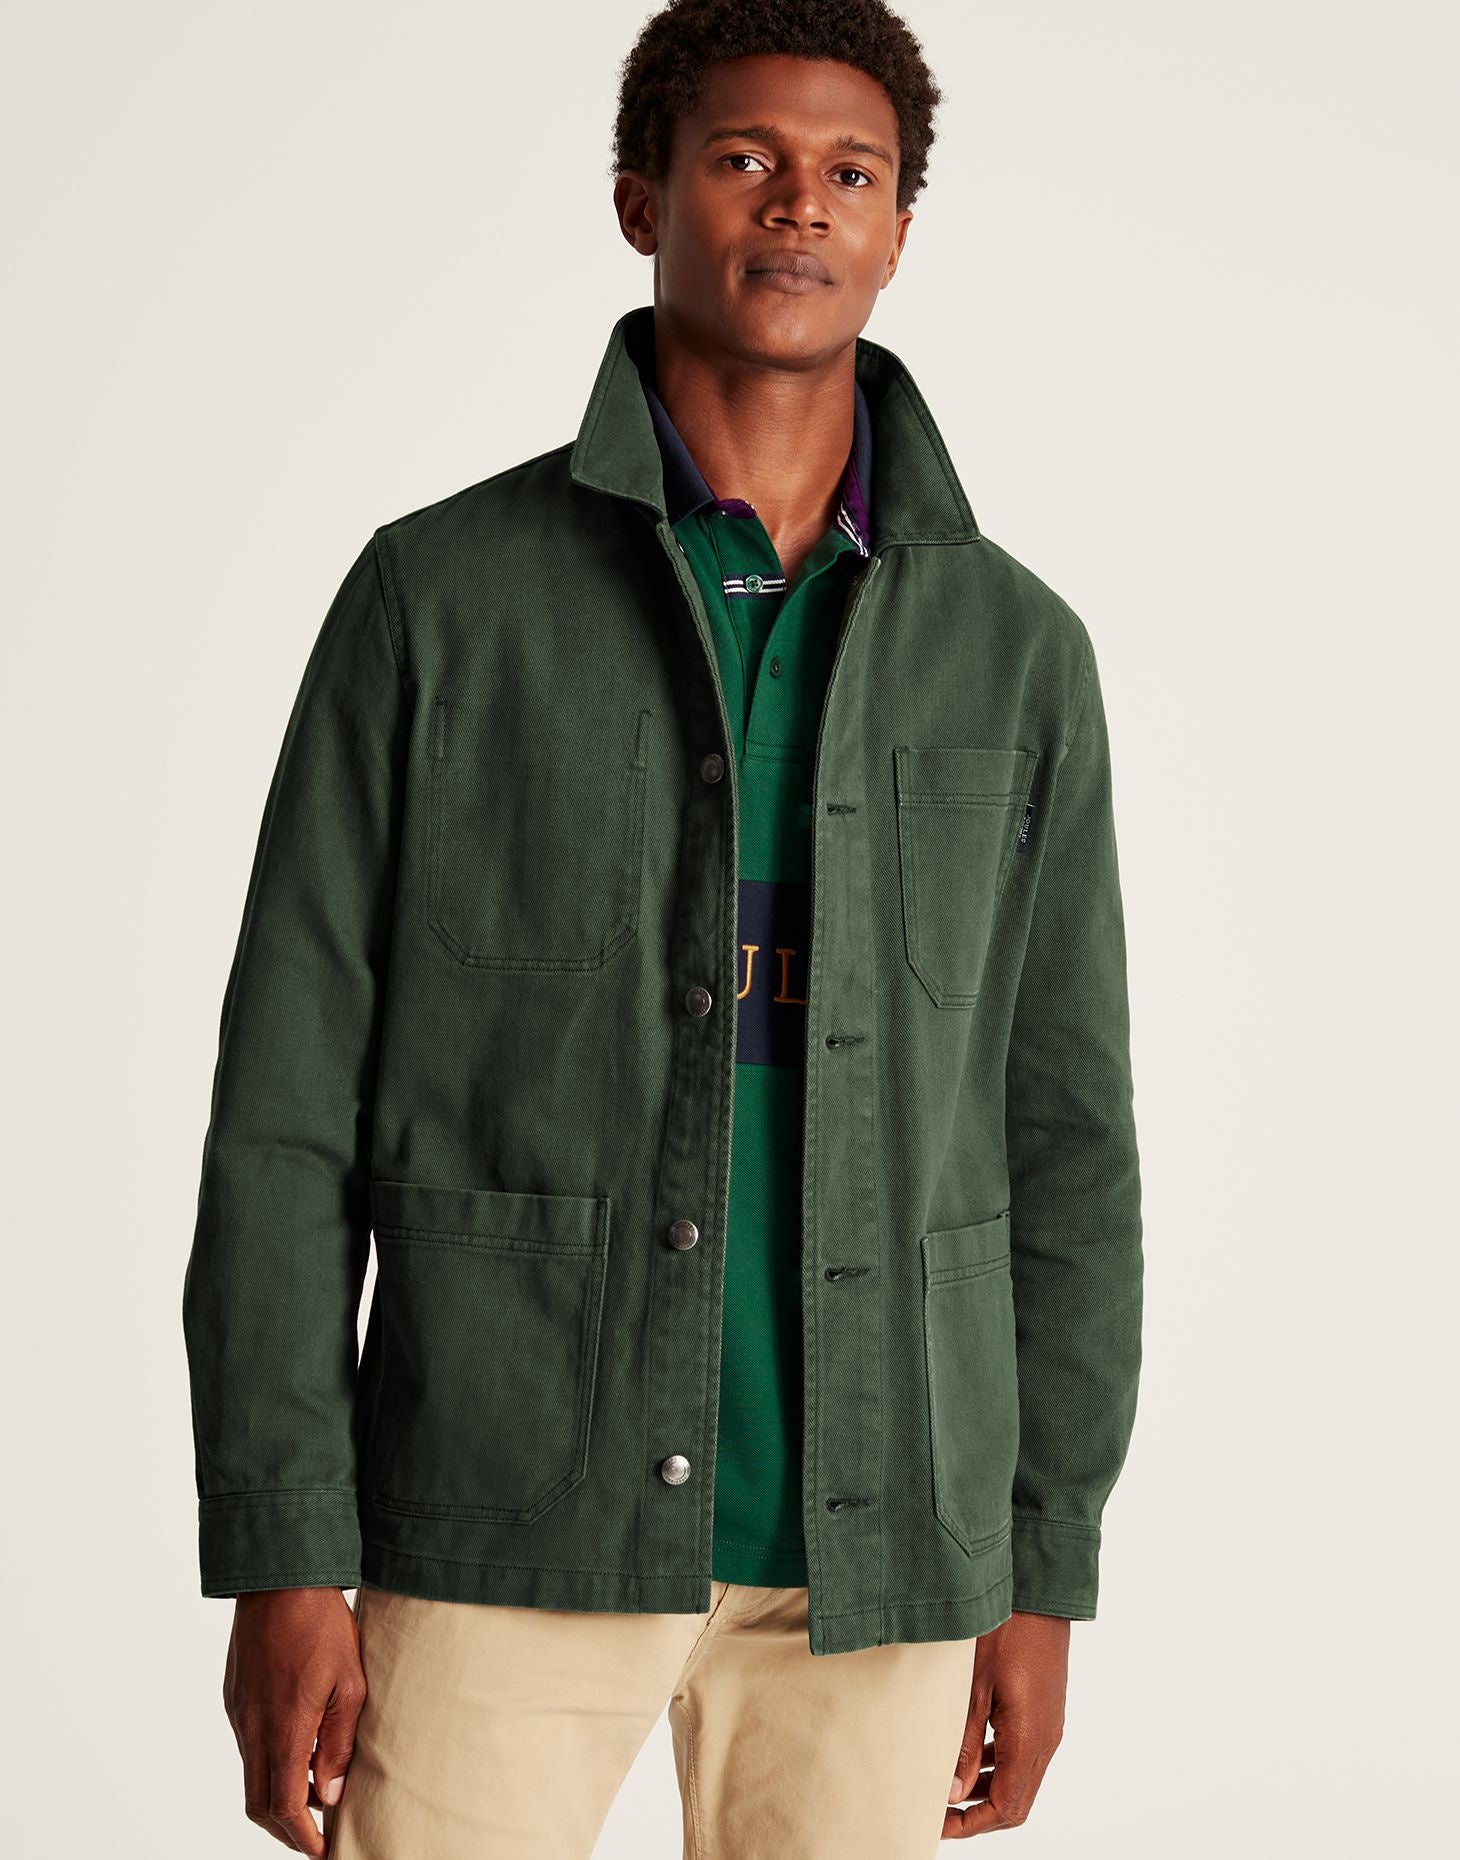 Lindell Multi Pocket Woven Jacket - Dark Green